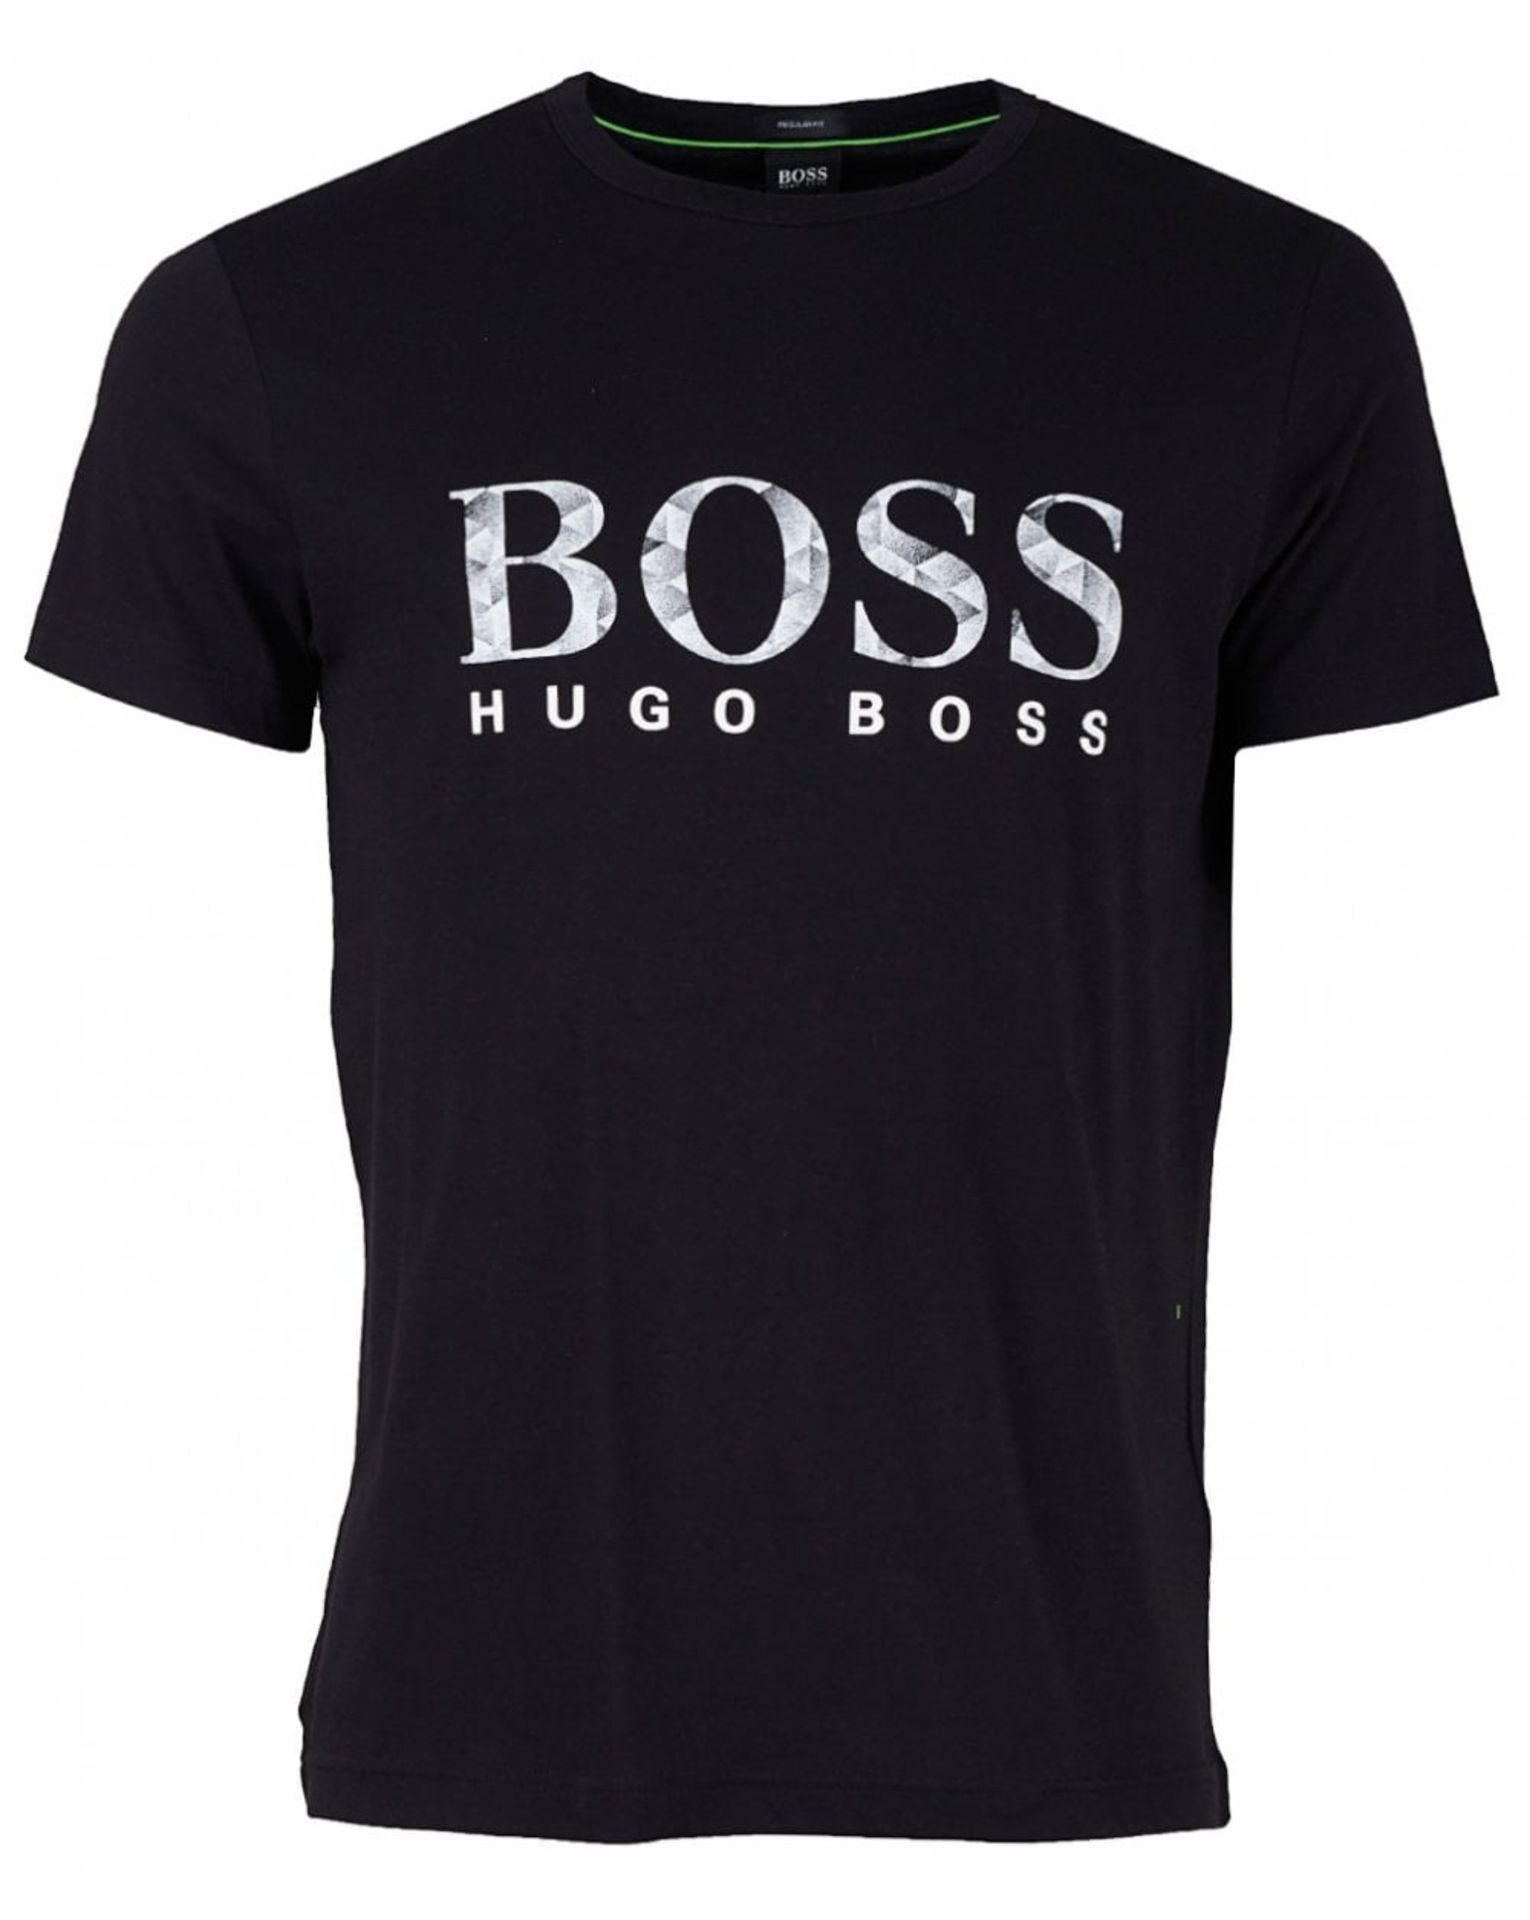 BOSS Men's Tee 4 T-Shirt Size M